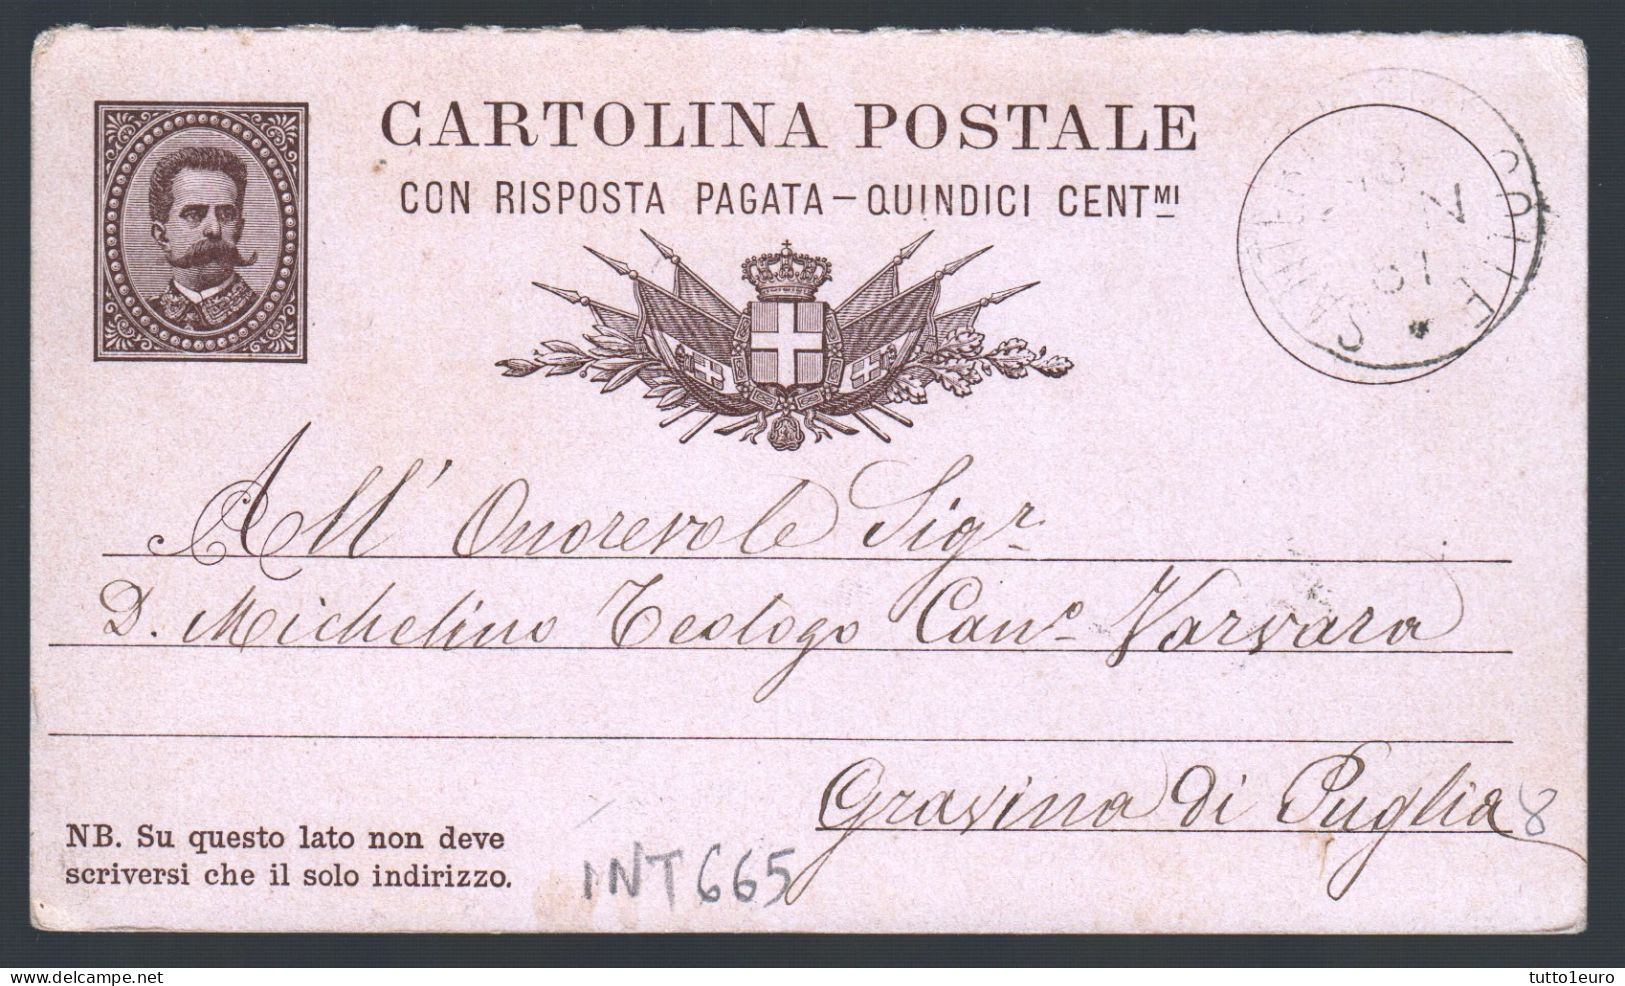 CARTOLINA POSTALE SPEDITA DA  SANTERAMO IN COLLE A GRAVINA IN PUGLIA NEL 1881 (INT665) - Entiers Postaux